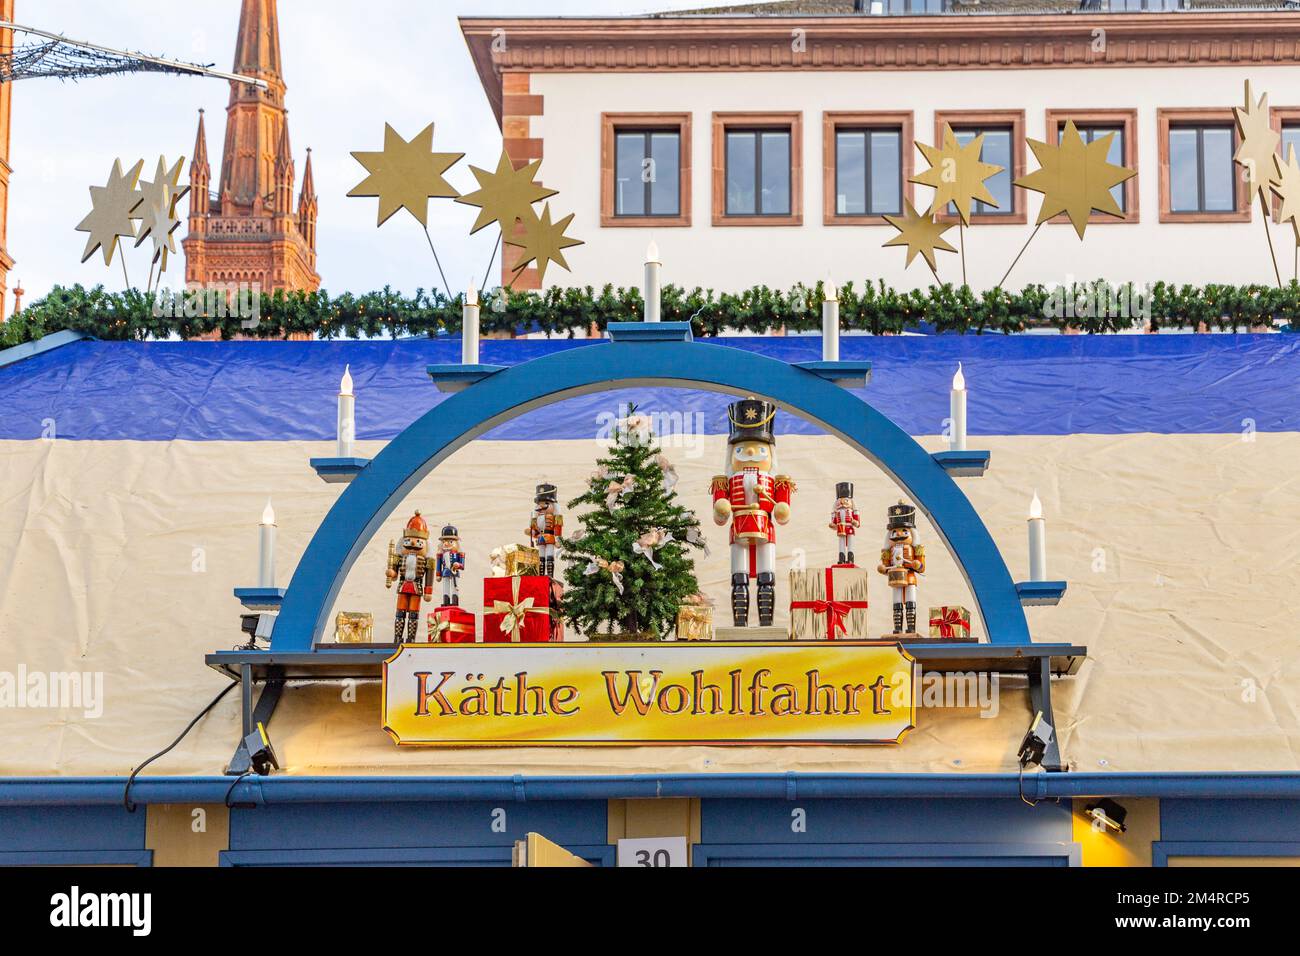 Wiesbaden, Allemagne - 21 décembre 2022 : emblème des boutiques Käthe Wohlfahrt du marché de Christkindl, le marché des étoiles de tir de Wiesbaden, Allemagne. Banque D'Images